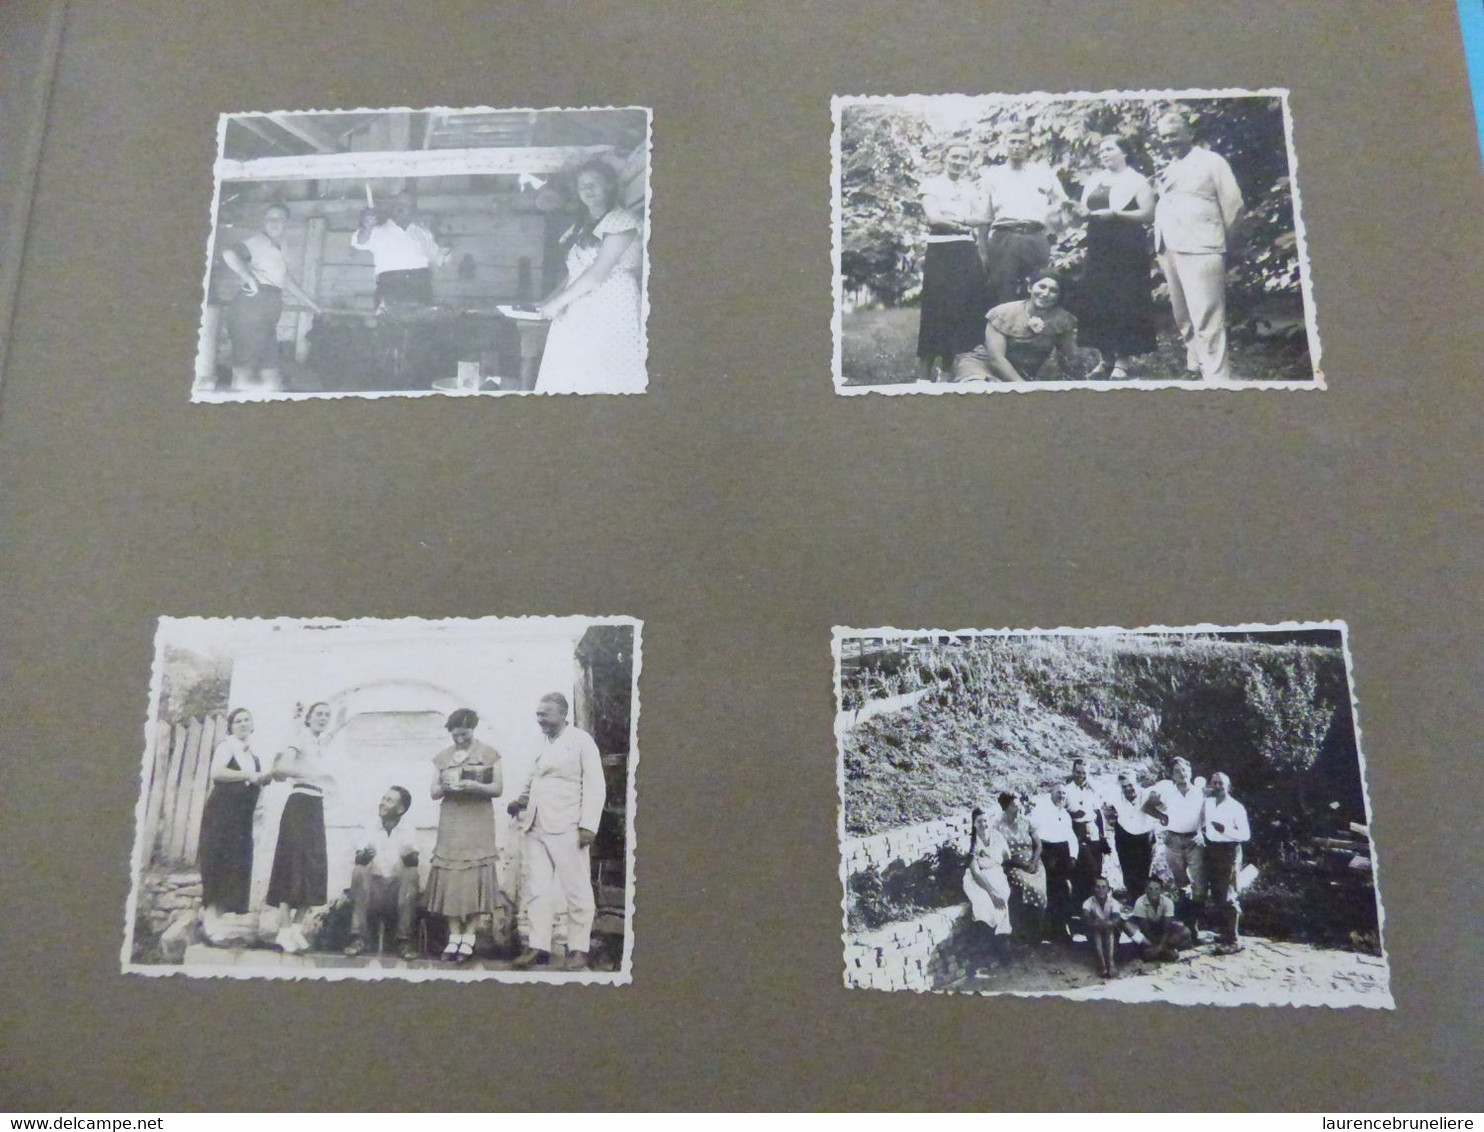 MISSION GEOLOGIQUE  KURUGA PRES DE BOR (SERBIE)   NOVEMBRE 1934 -  André LAUNAY INGENIEUR DES MINES  A SAINT-NAZAIRE - Plaatsen